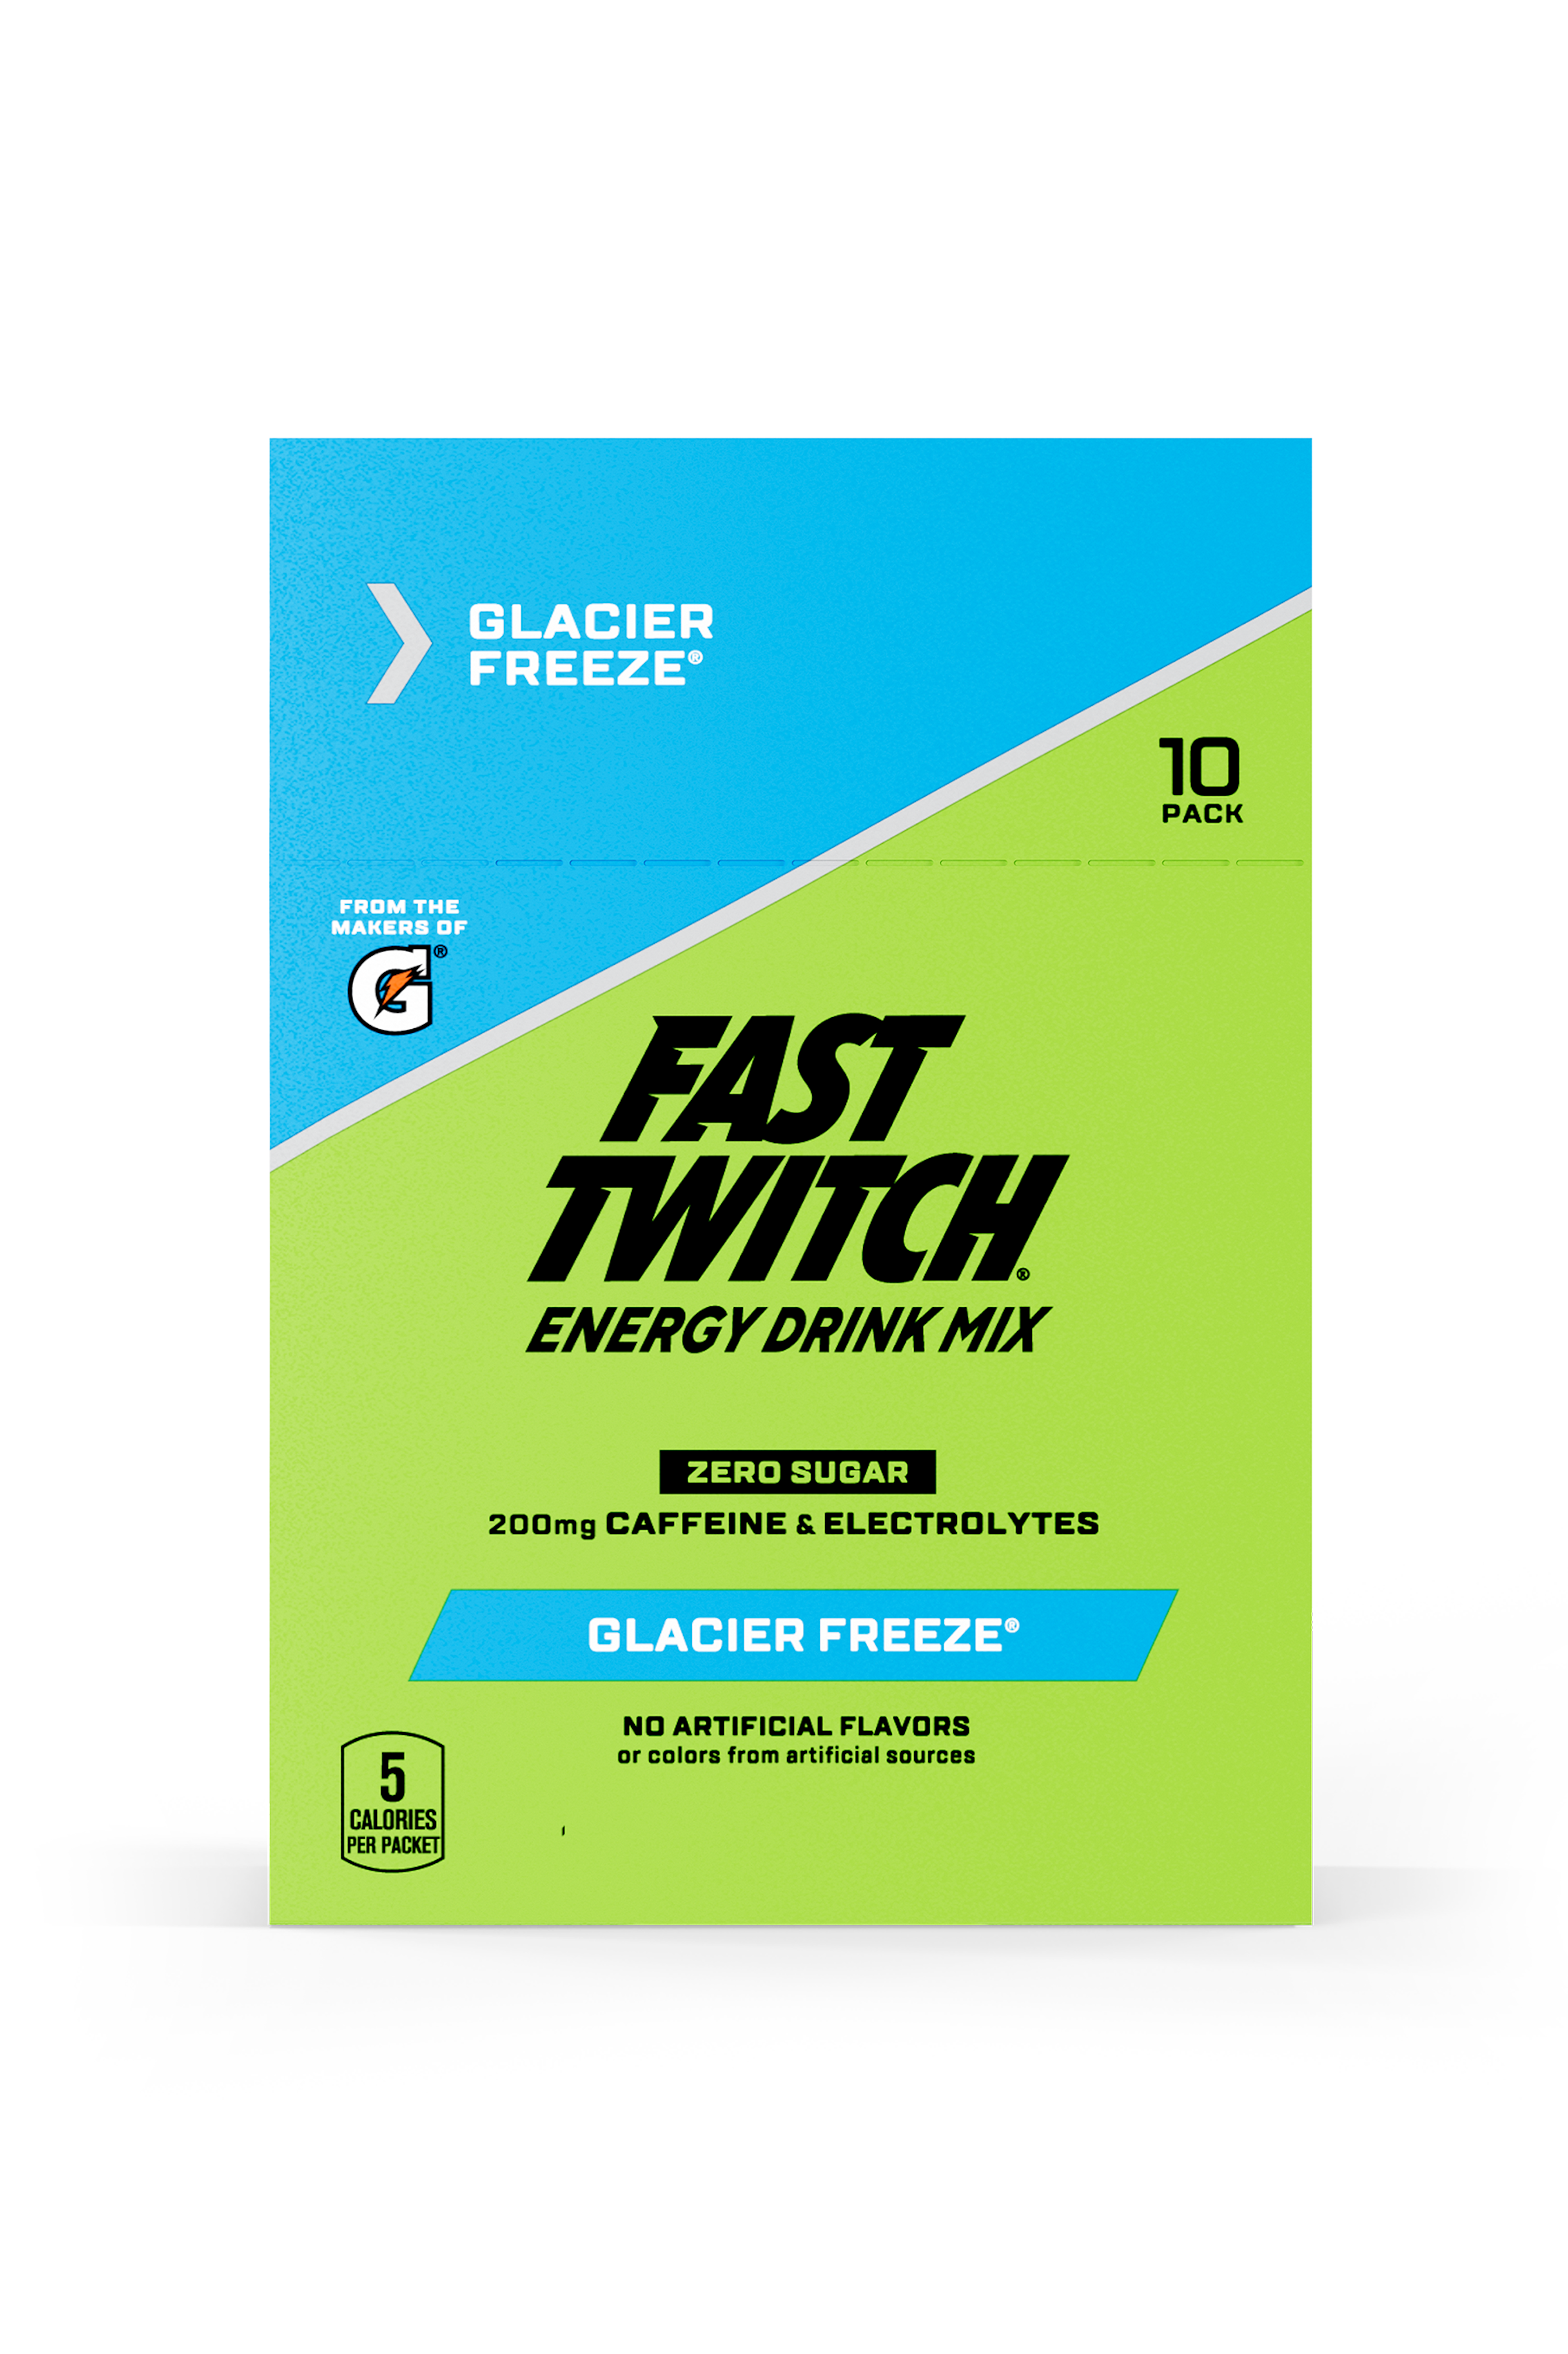 Fast Twitch Powder Sticks Glacier Freeze packaging